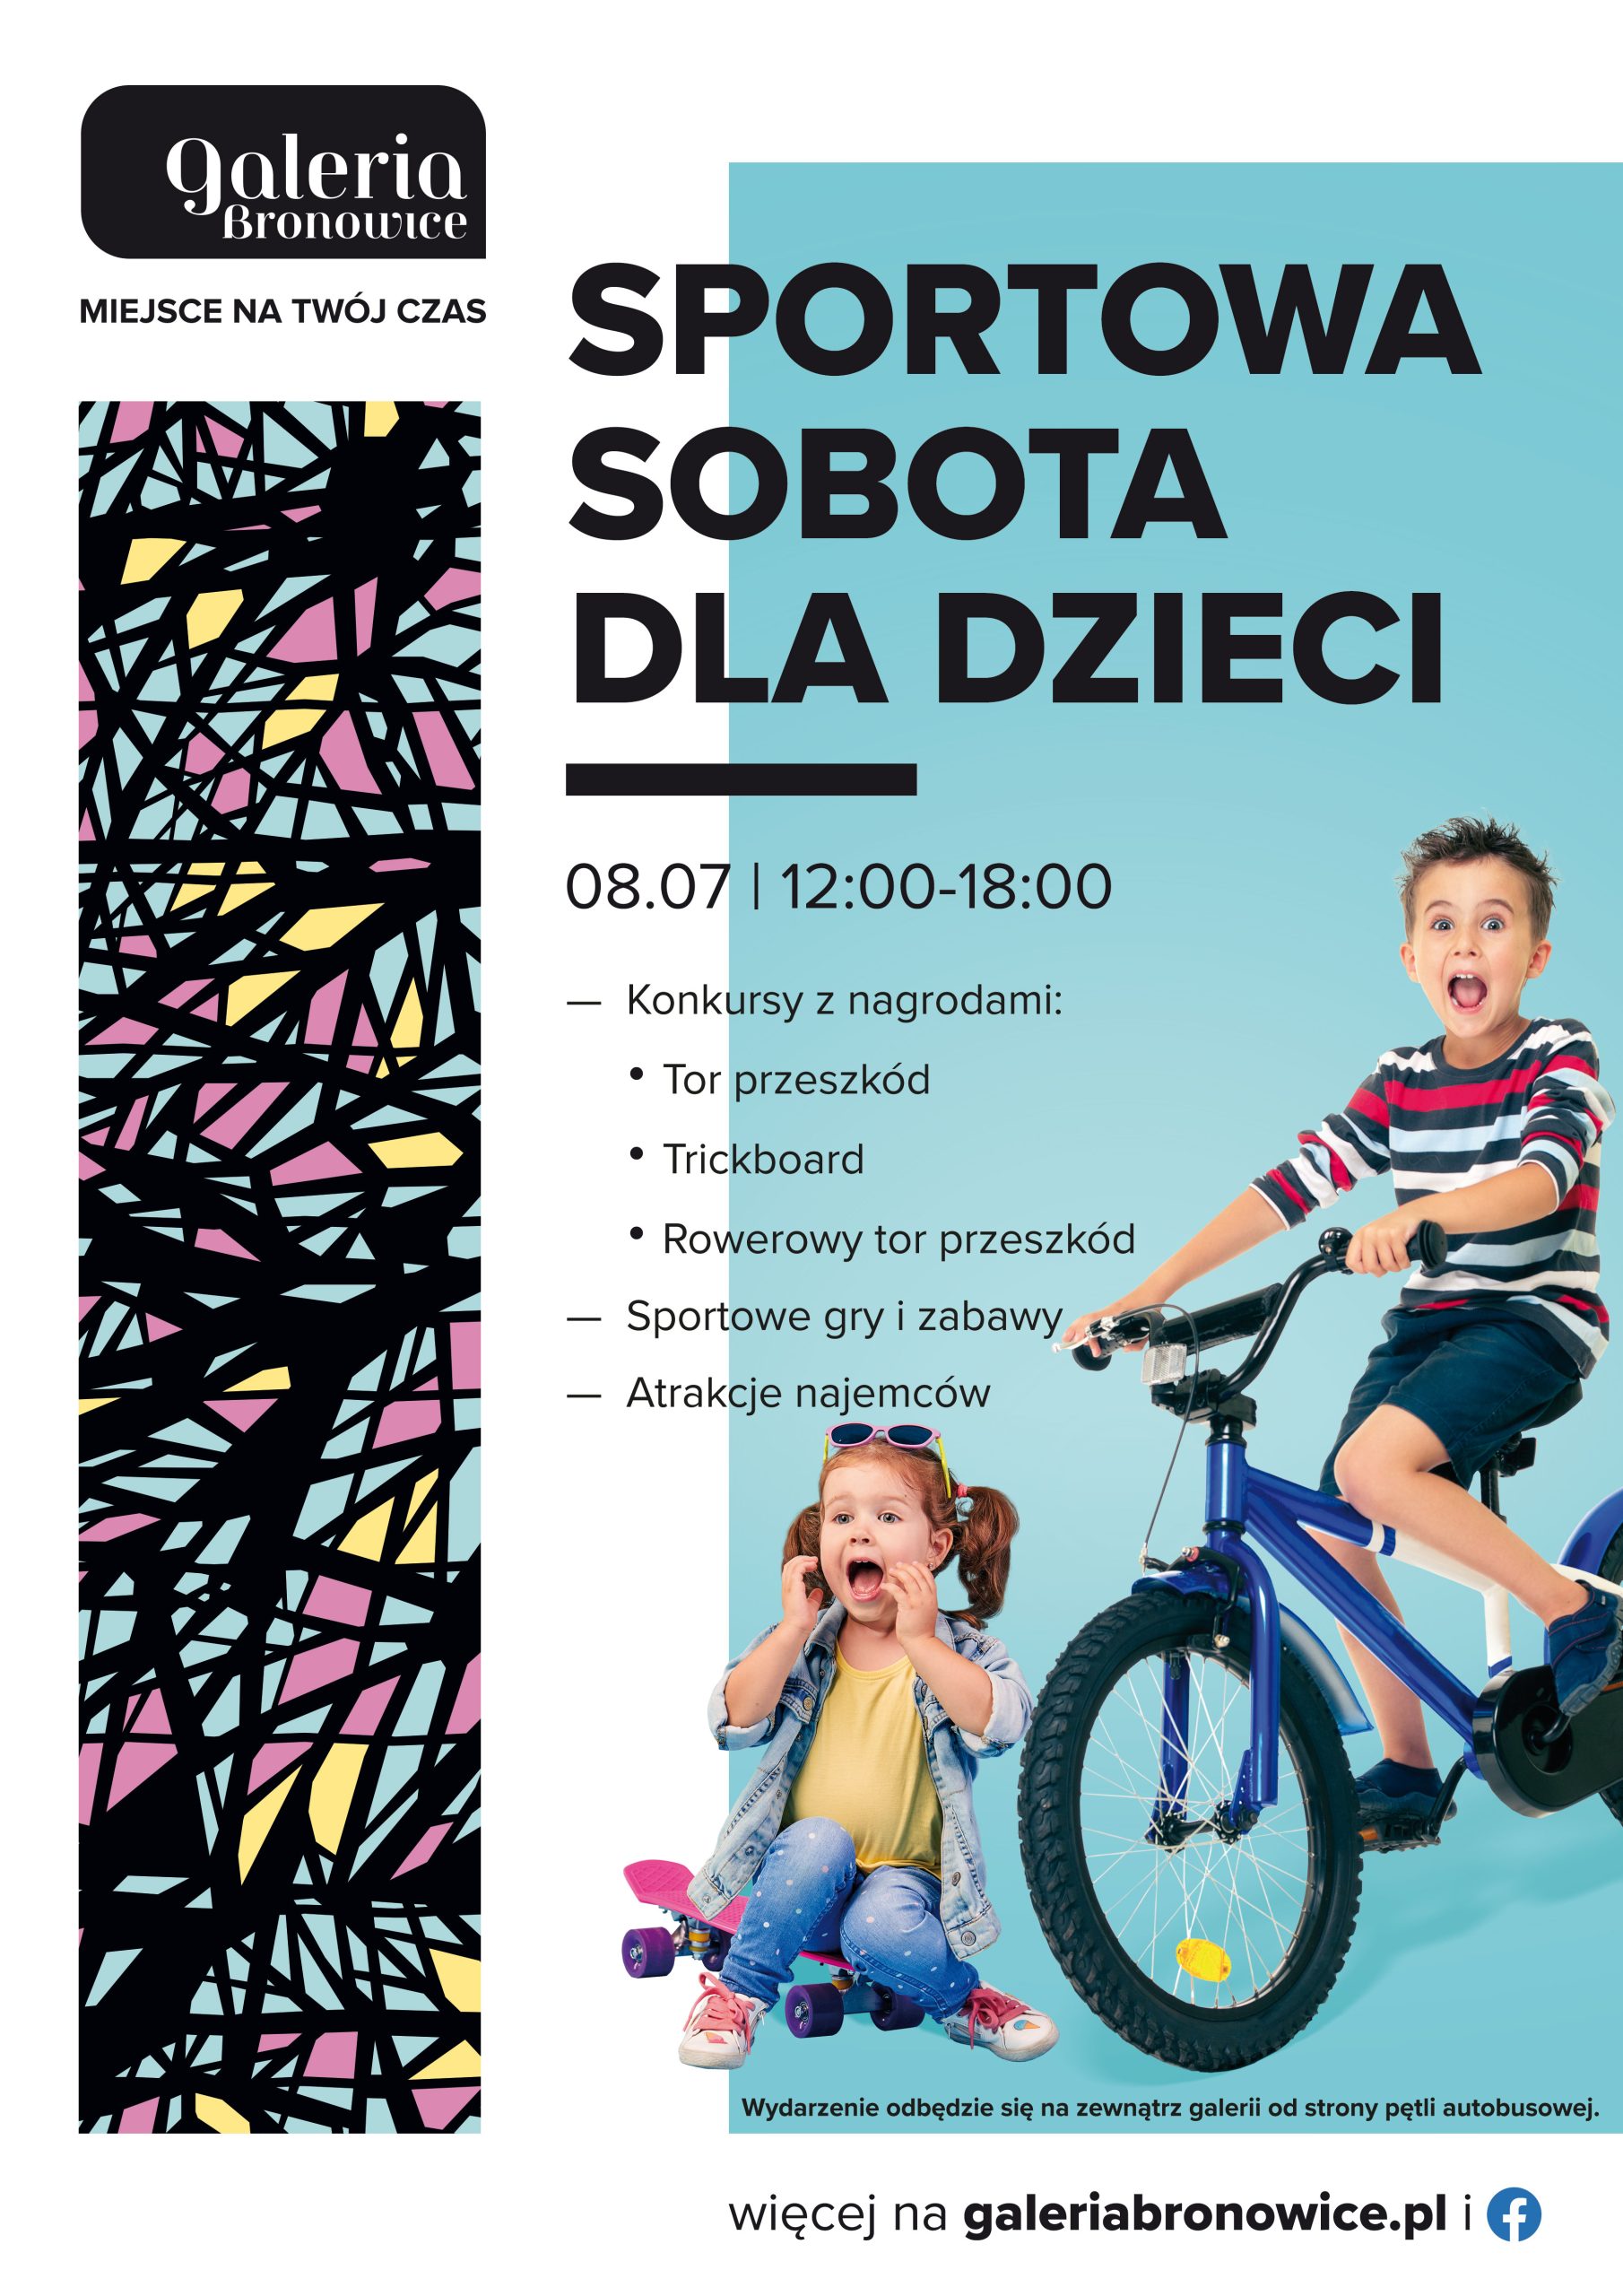 sportowa sobota dla dzieci w galerii bronowice plakat scaled - Sportowe atrakcje dla dzieci przed Galerią Bronowice